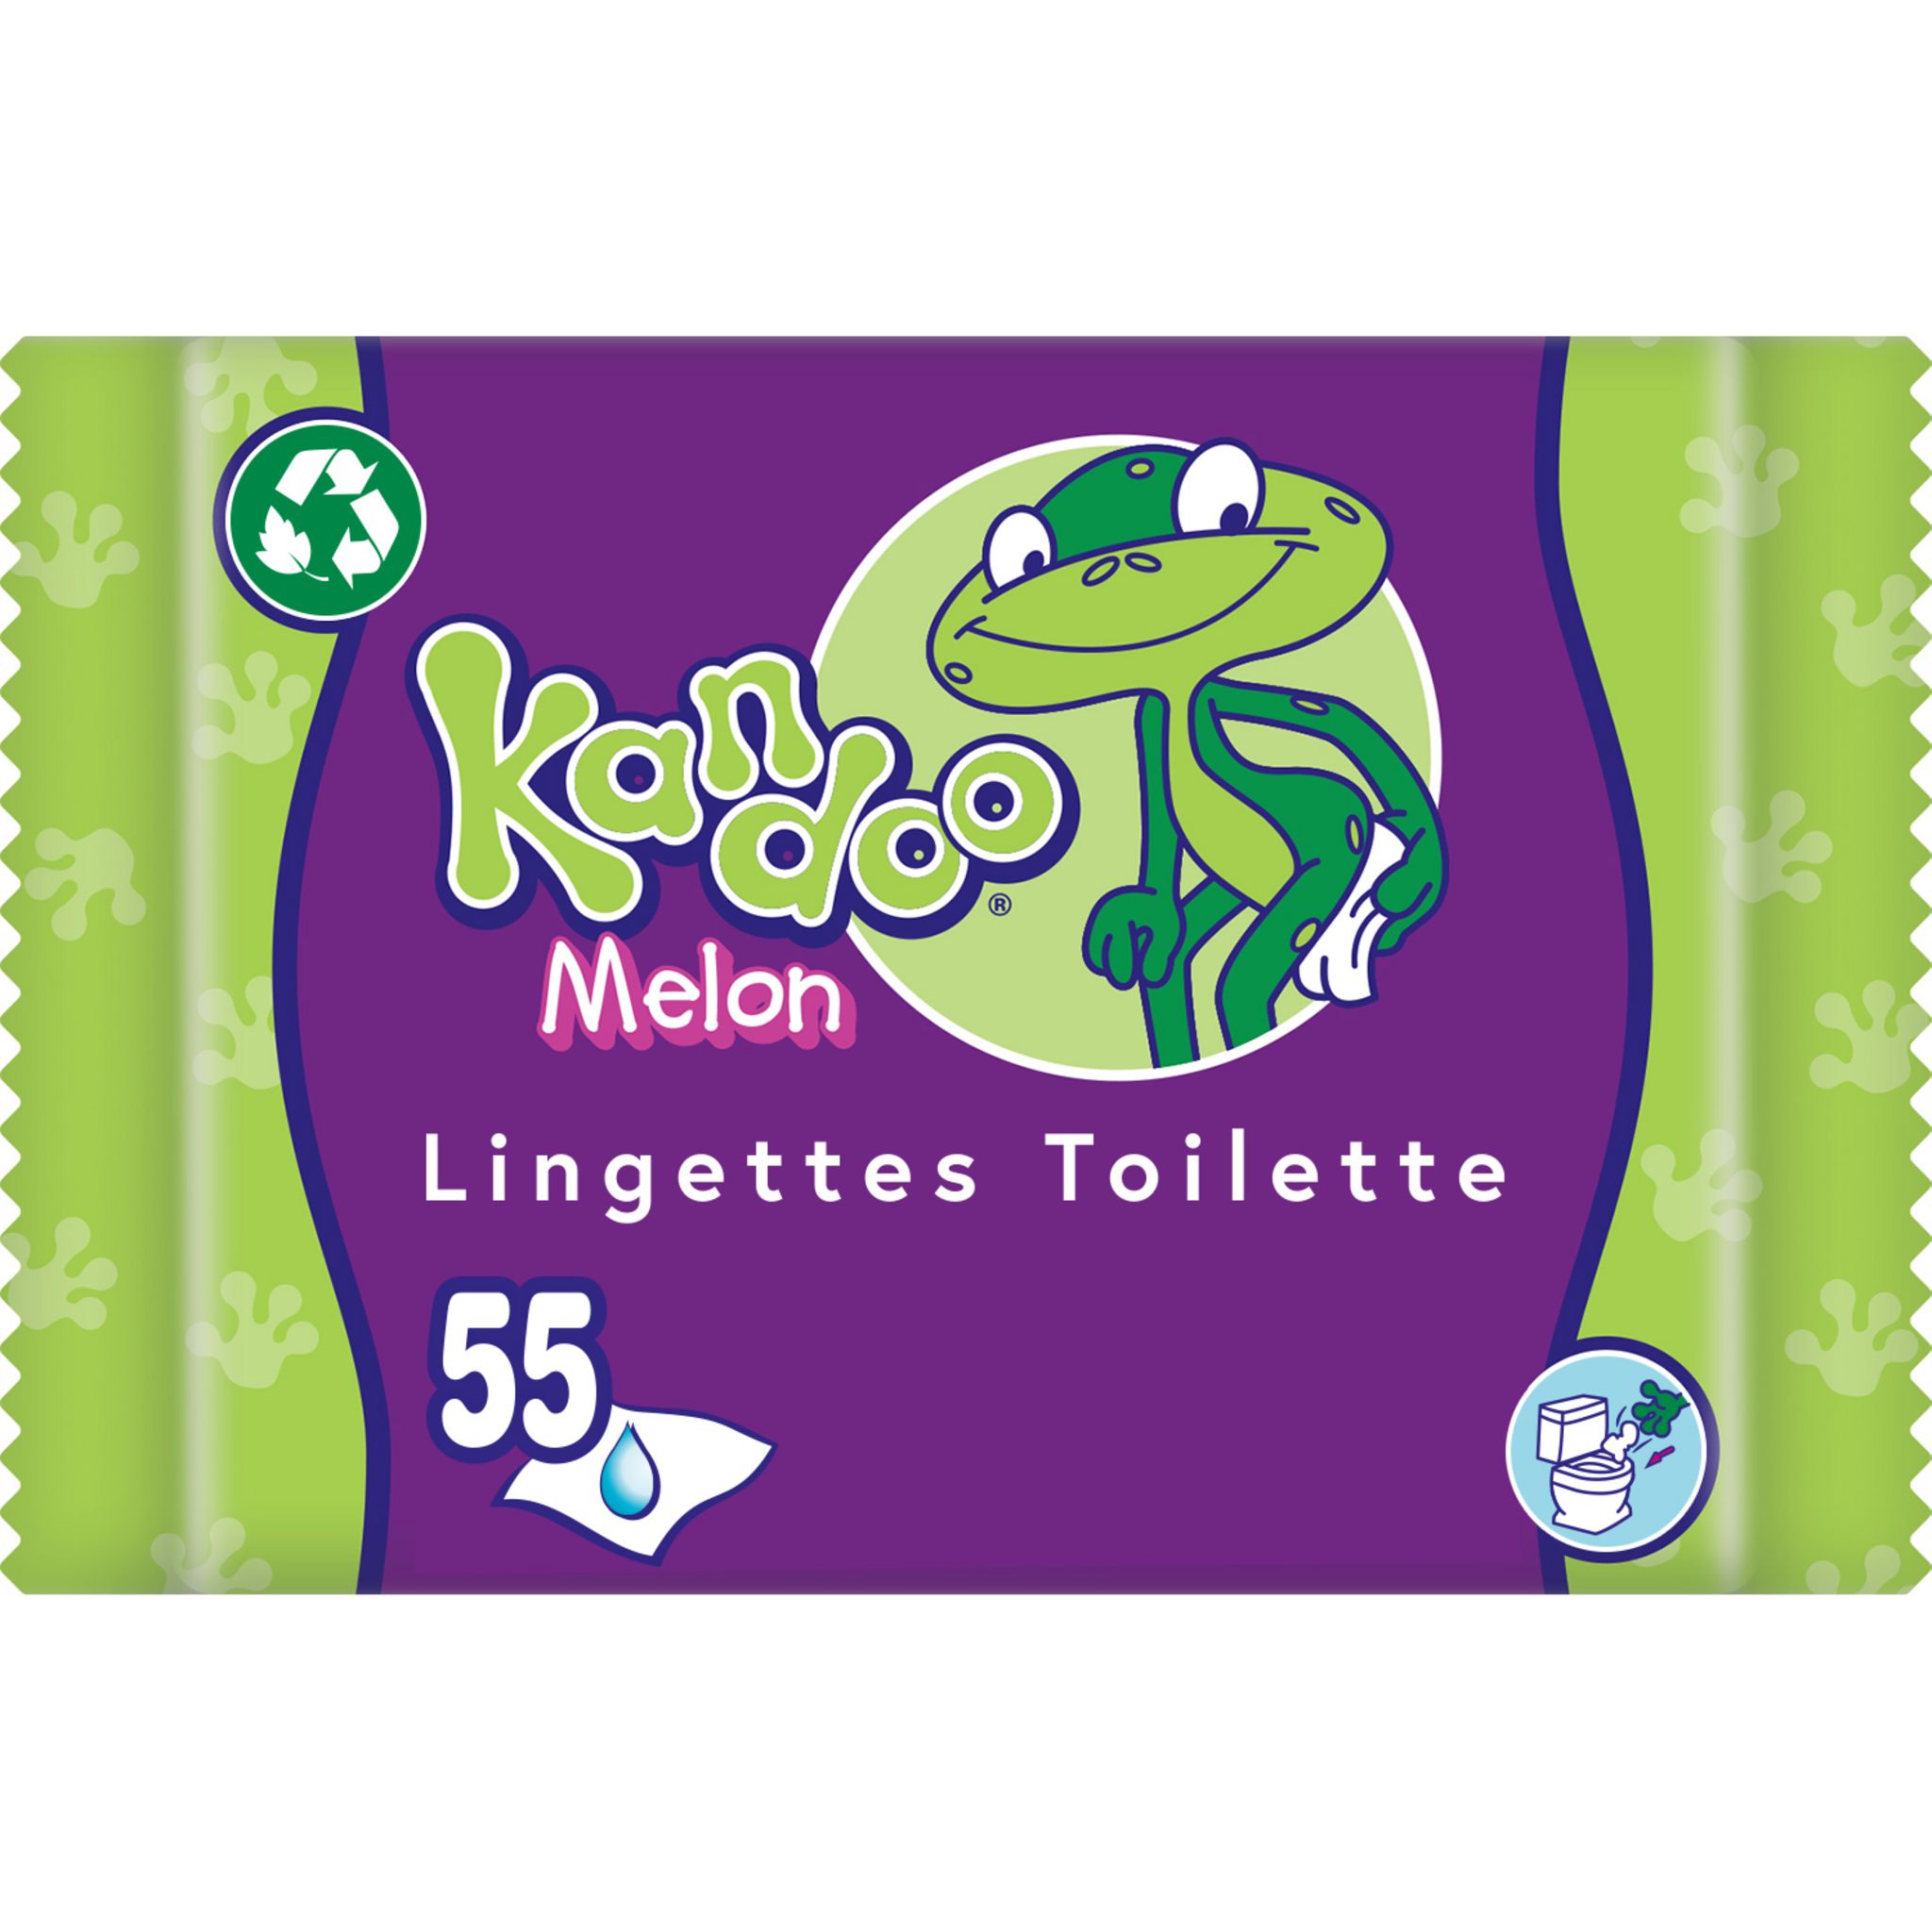 KANDOO lingettes toilette melon 2 paquets + 1 offert pas cher 